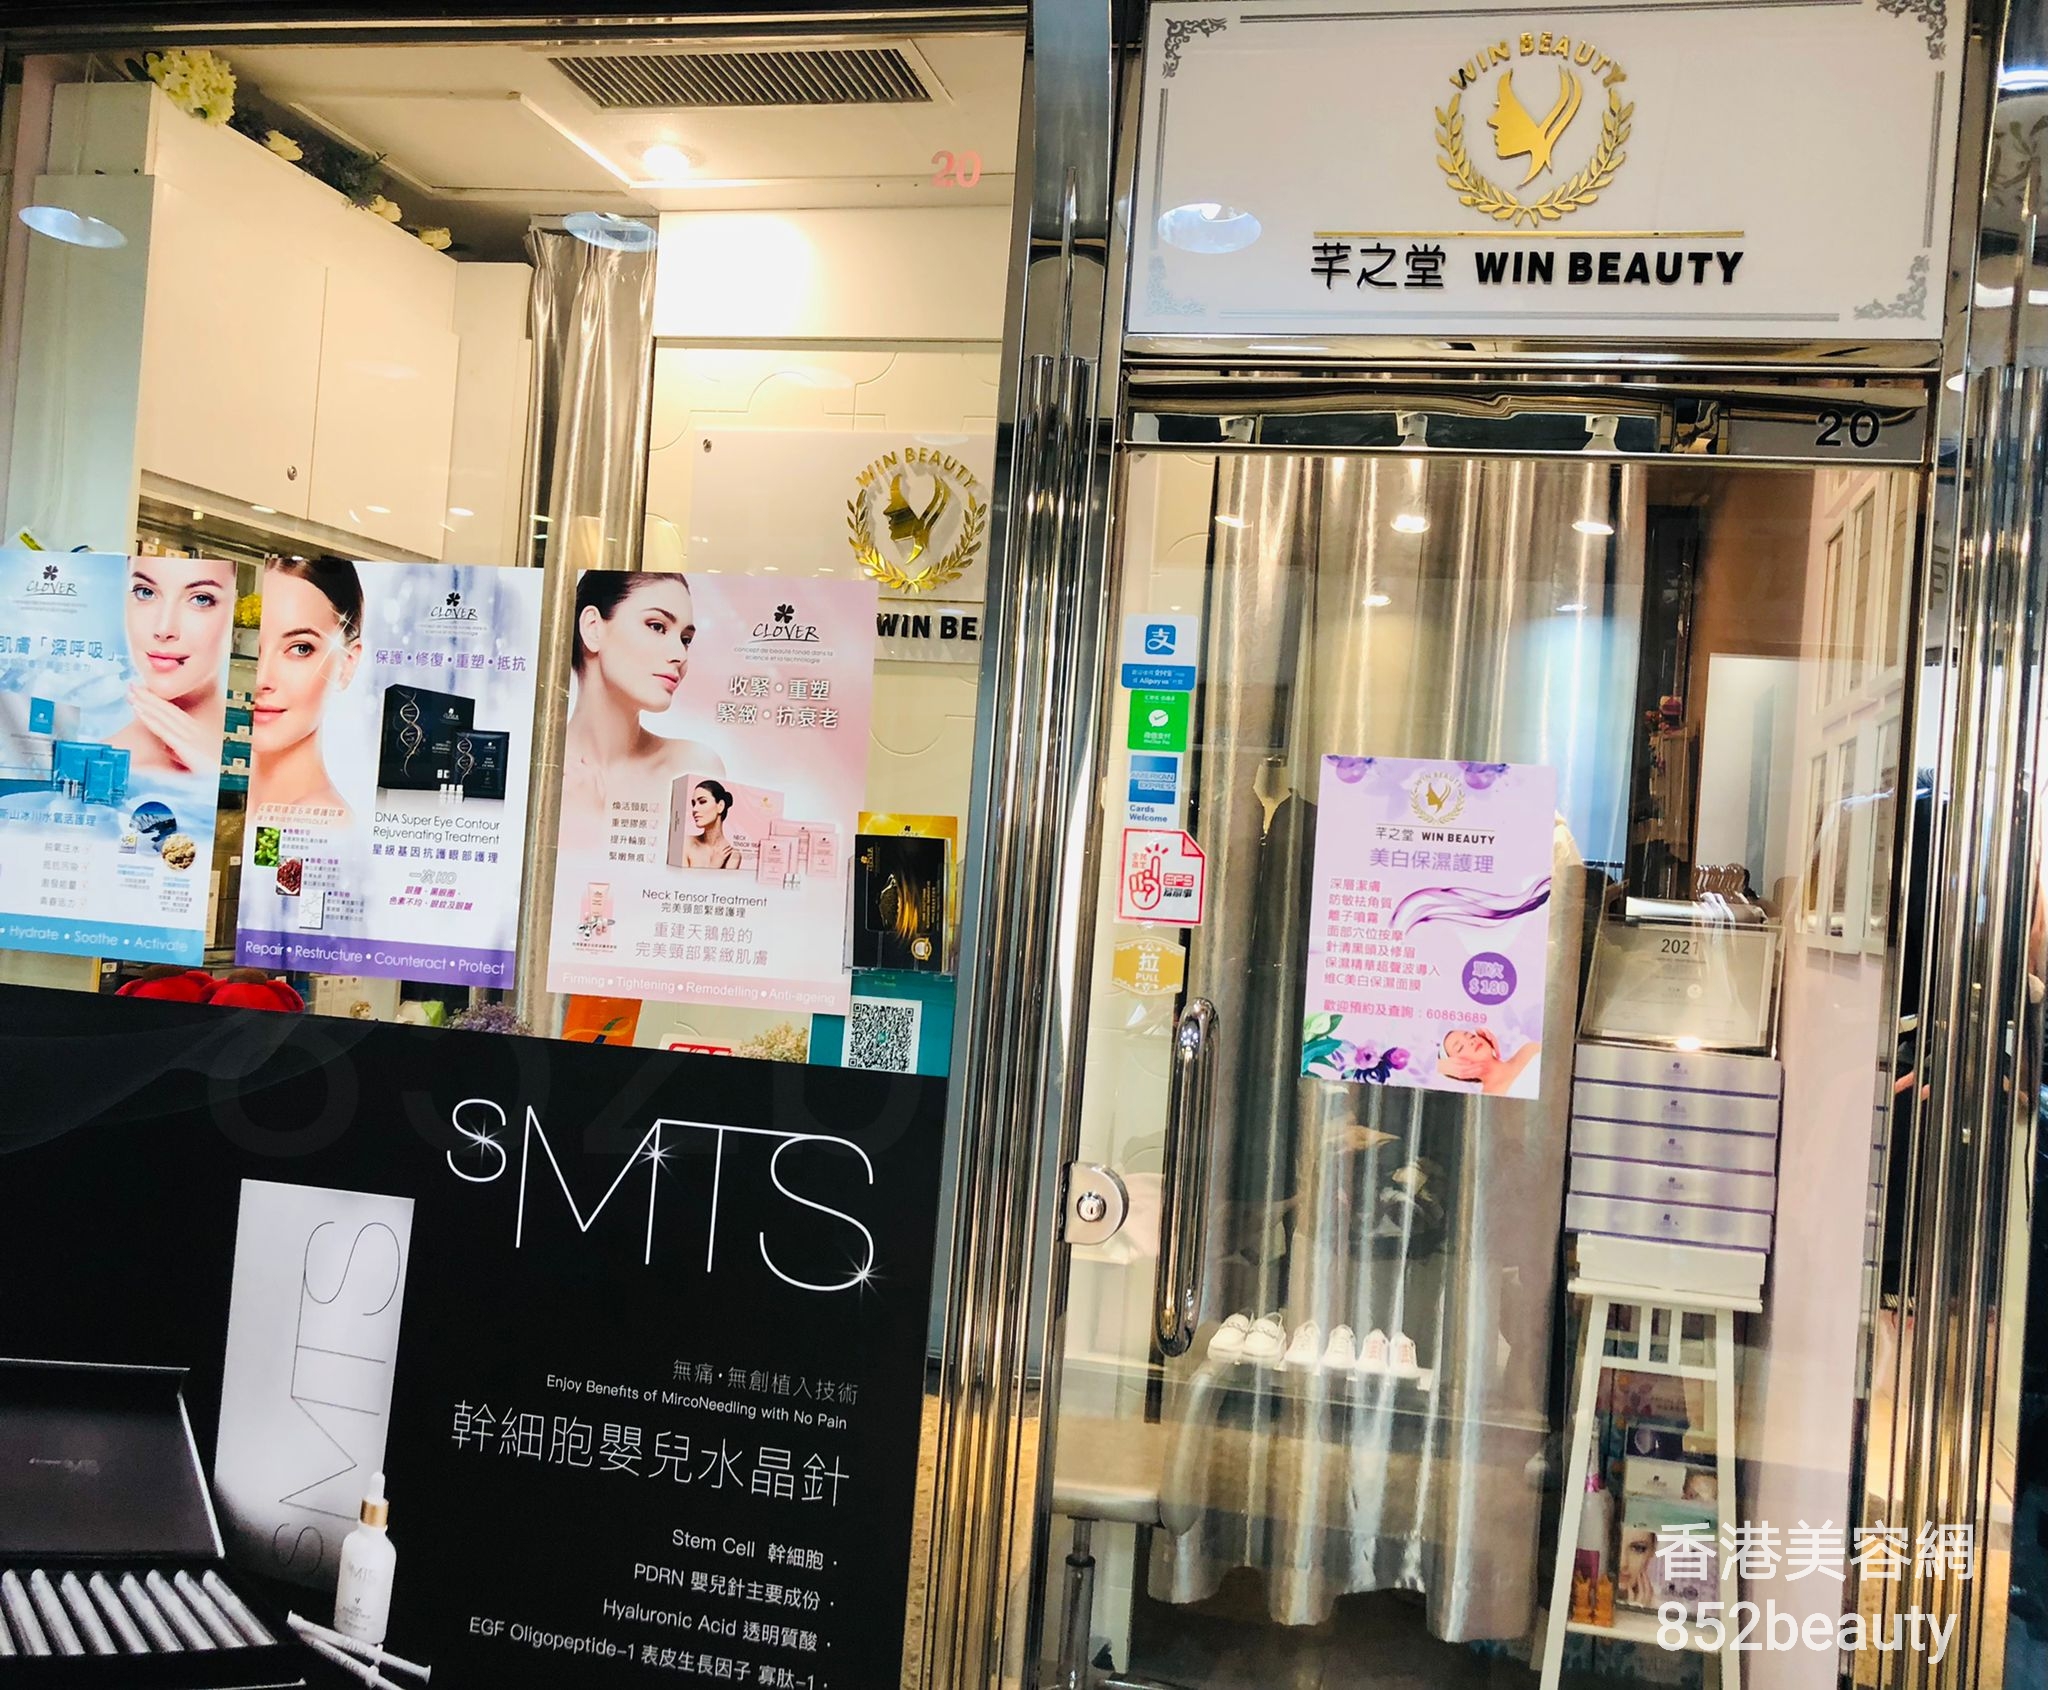 香港美容網 Hong Kong Beauty Salon 美容院 / 美容師: 芊之堂 WIN BEAUTY